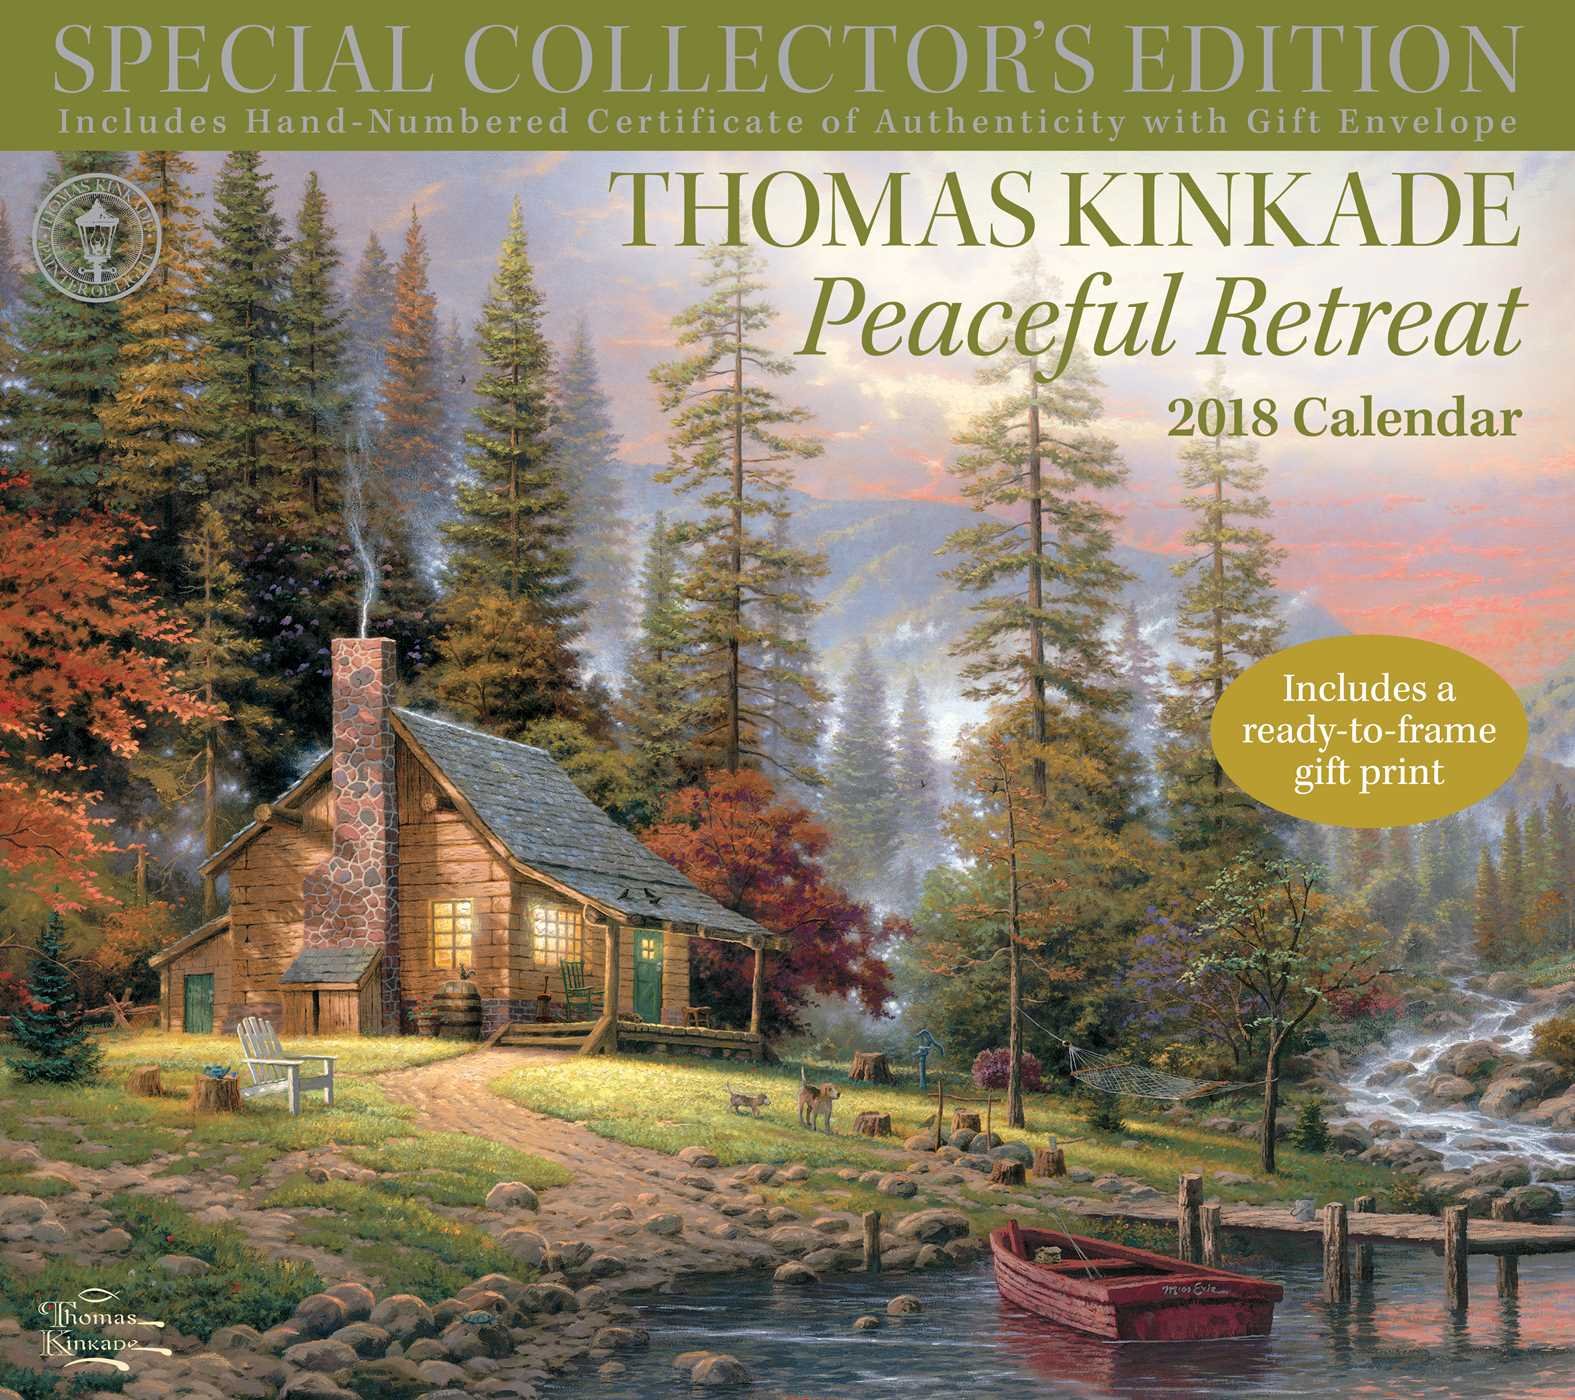 Amazon.com: Thomas Kinkade Special Collector's Edition 2018 Deluxe ...